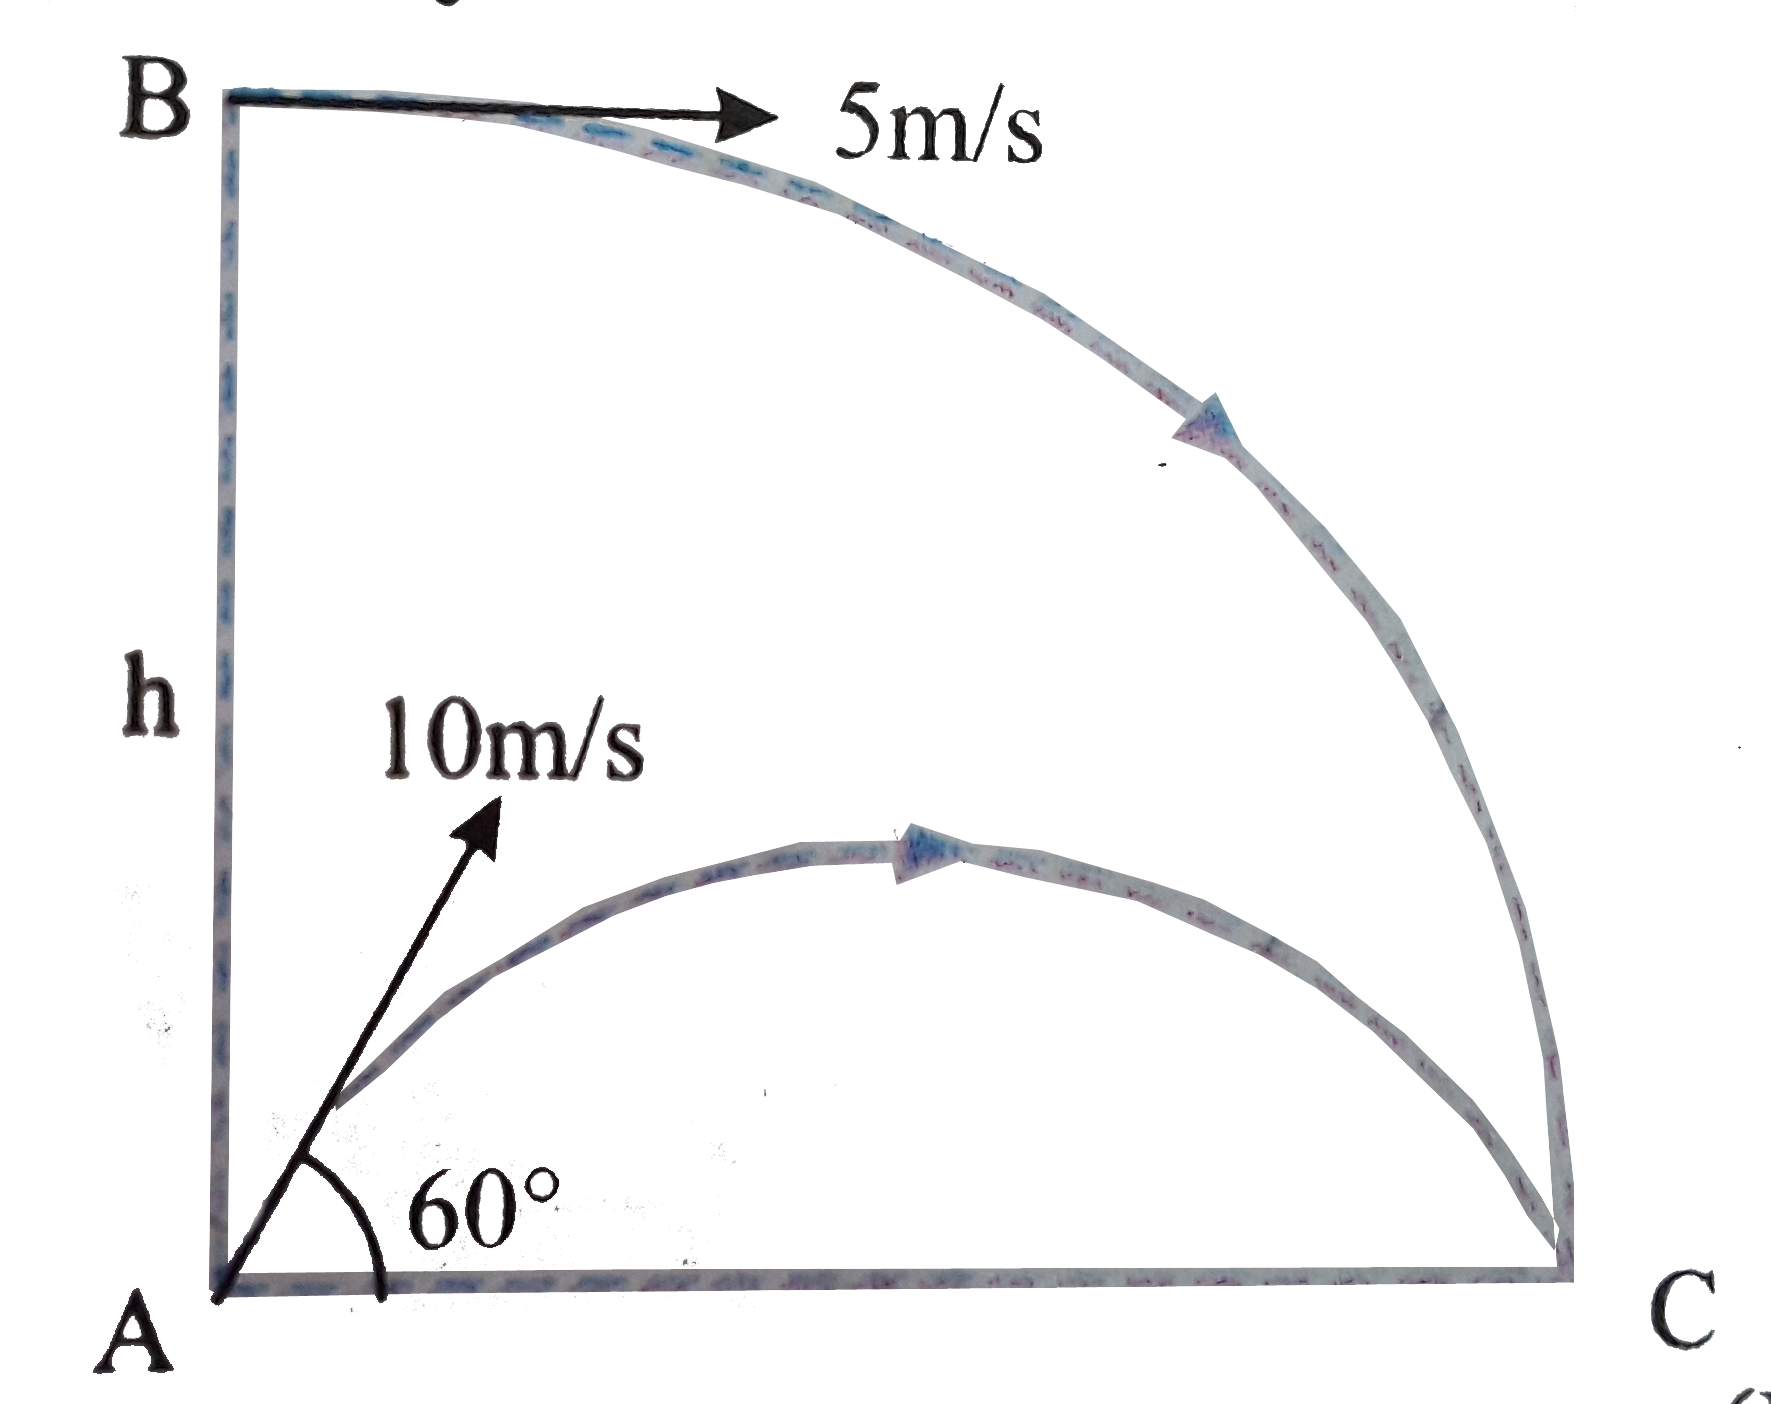 एक कण A क्षैतिज के साथ 60^@  के कोण पर 10 ms^(-1)  के प्रारंभिक वेग के साथ ज़मीन से प्रक्षेपित किया जाता है। किस ऊंचाई h से, एक अन्य कण B को क्षैतिज रूप से वेग 5 ms^(-1)  से प्रक्षेपित किया जाना चाहिए ताकि दोनों कण बिंदु C पर ज़मीन में टकराएं, यदि दोनों एक साथ प्रक्षेपित किये जाते हैं? ( g = 10ms^(-2))